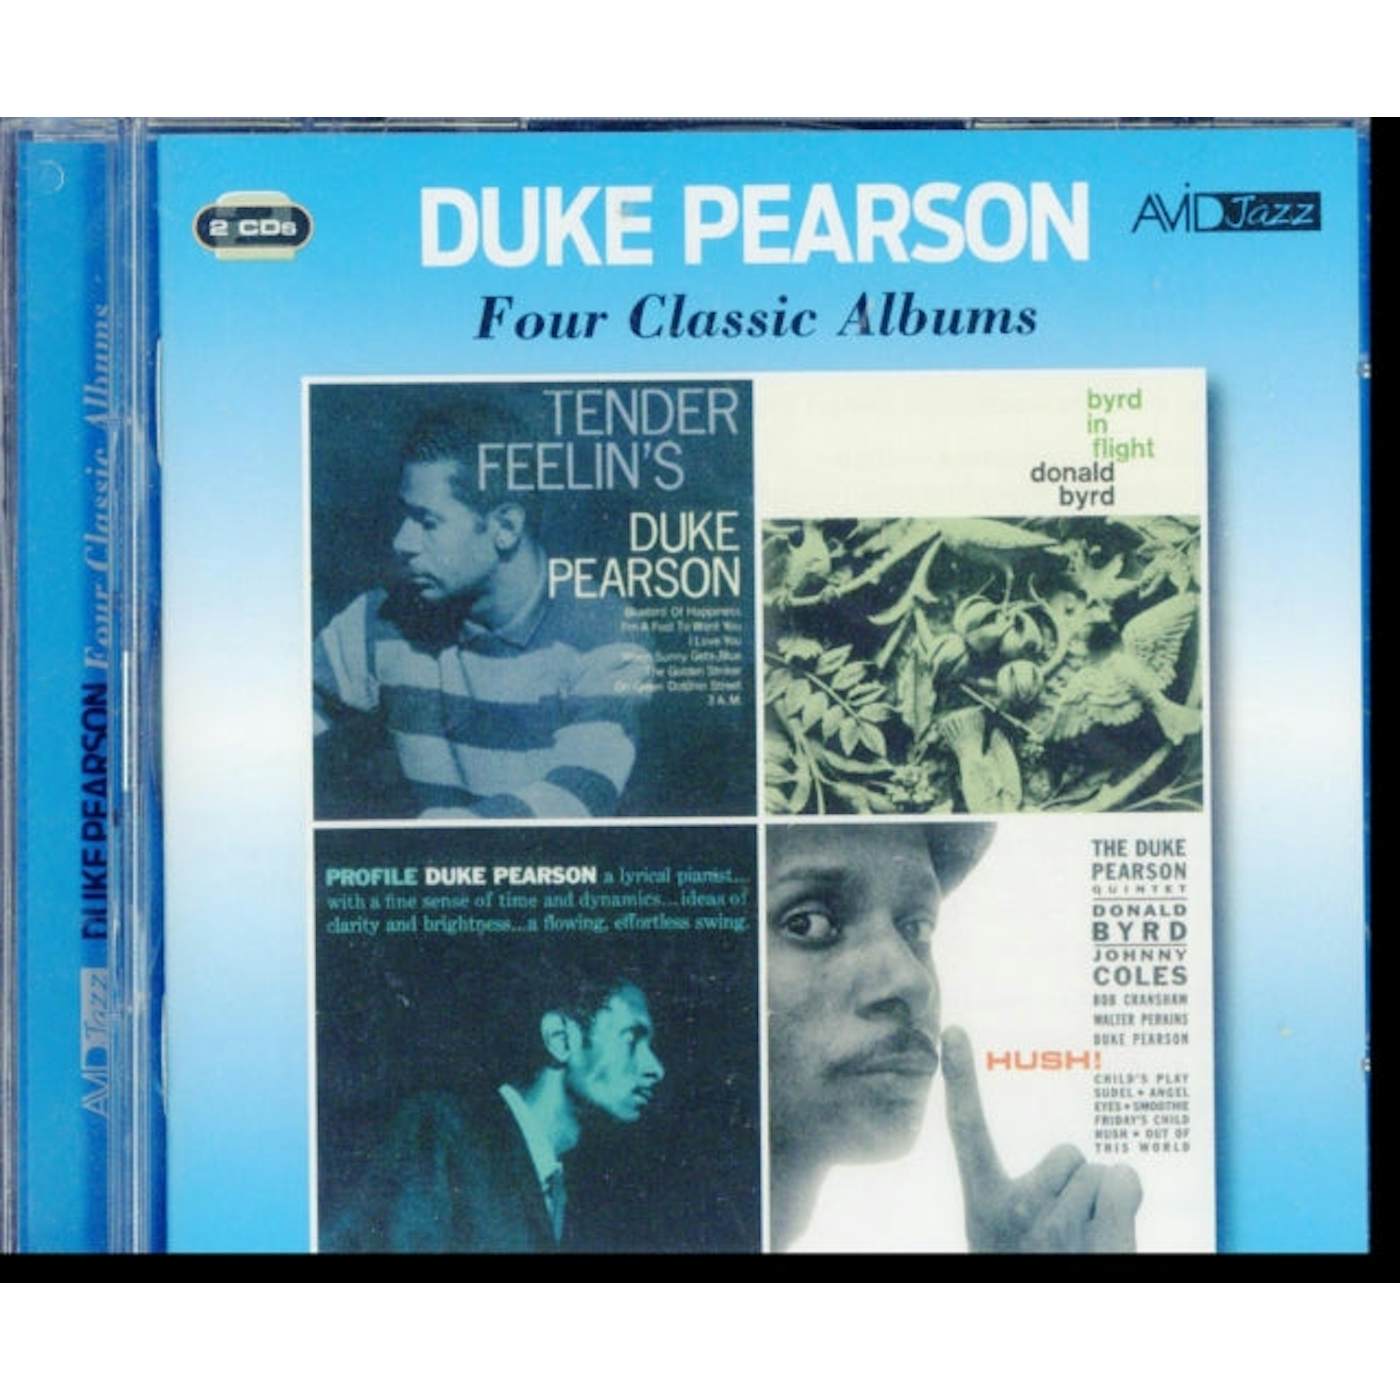 Duke Pearson CD - Four Classic Albums (Tender Feelin's / Byrd In Flight / Profile / Hush)